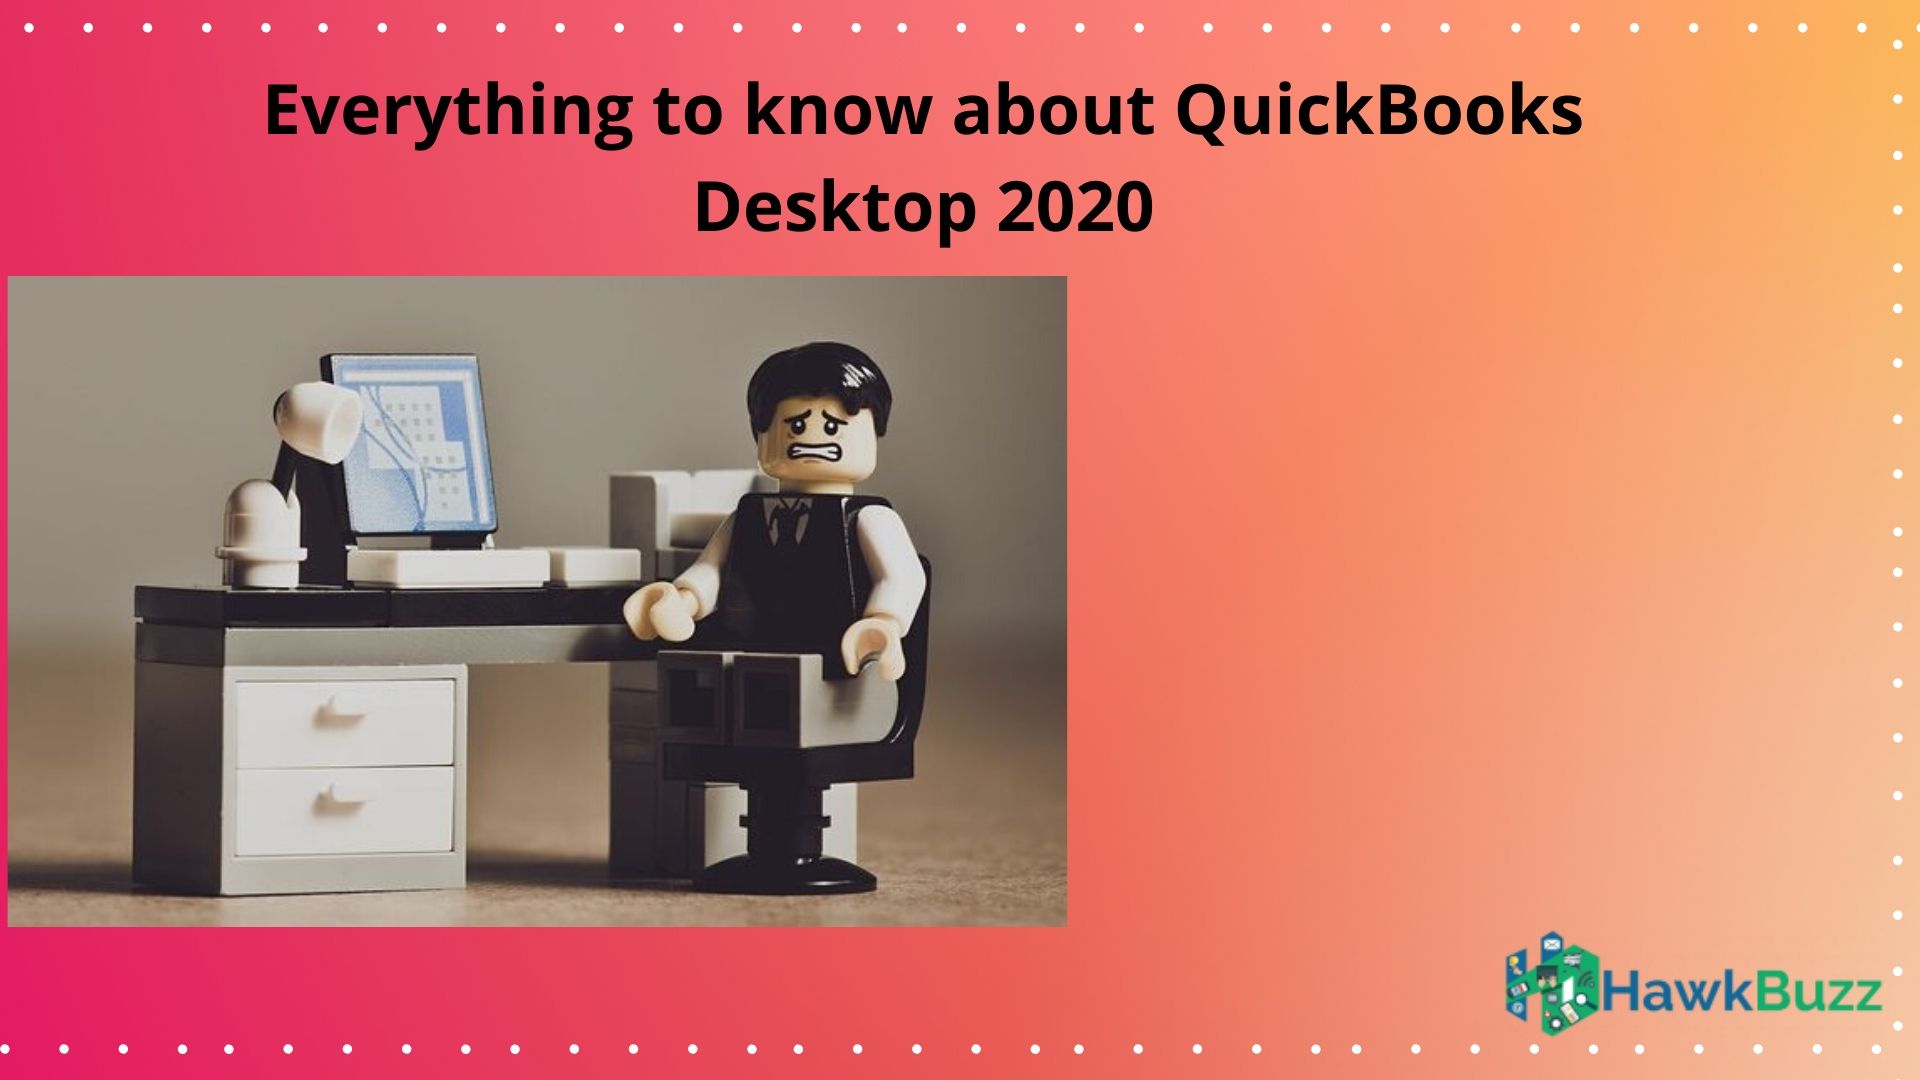 QuickBooks Desktop 2020